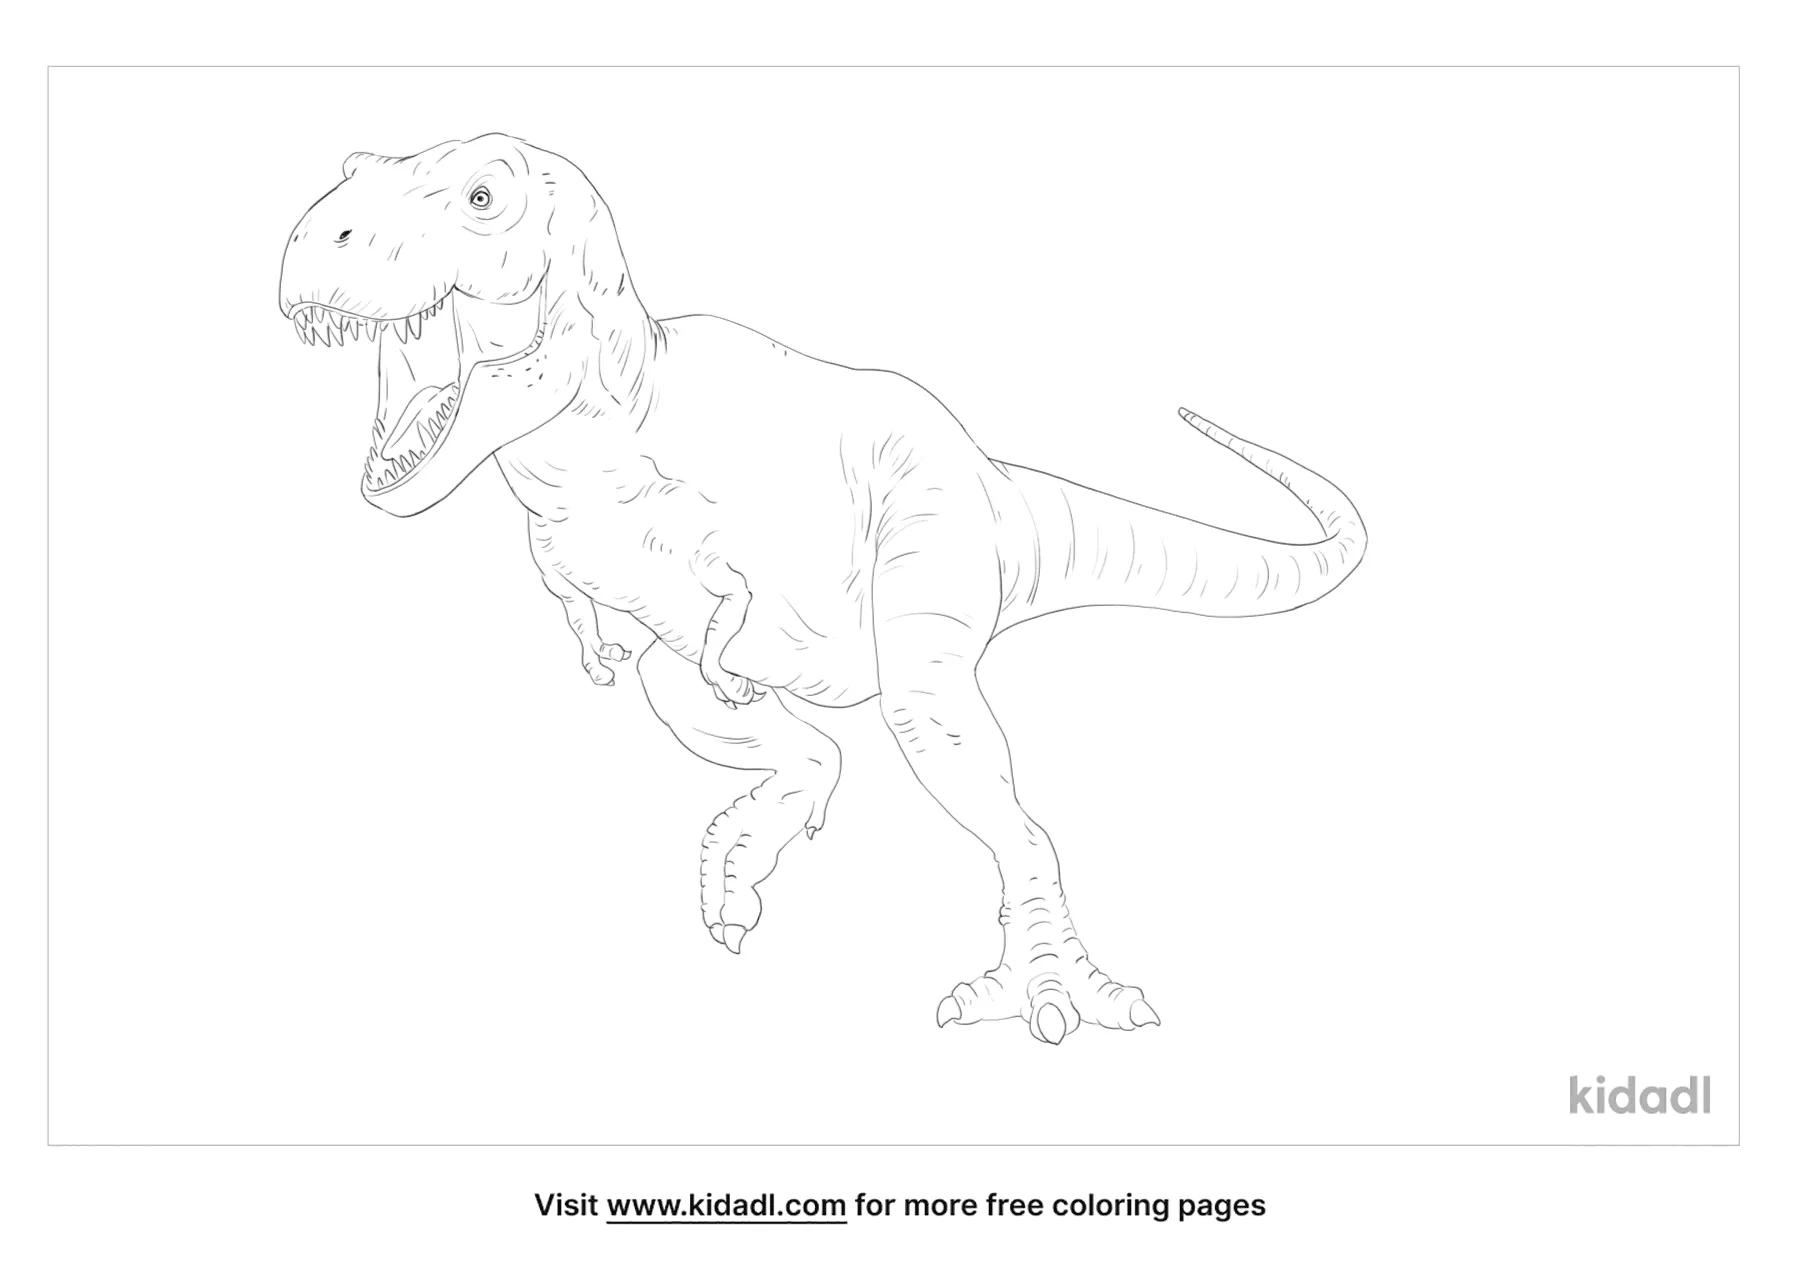 Tyrannosaurus Coloring Page